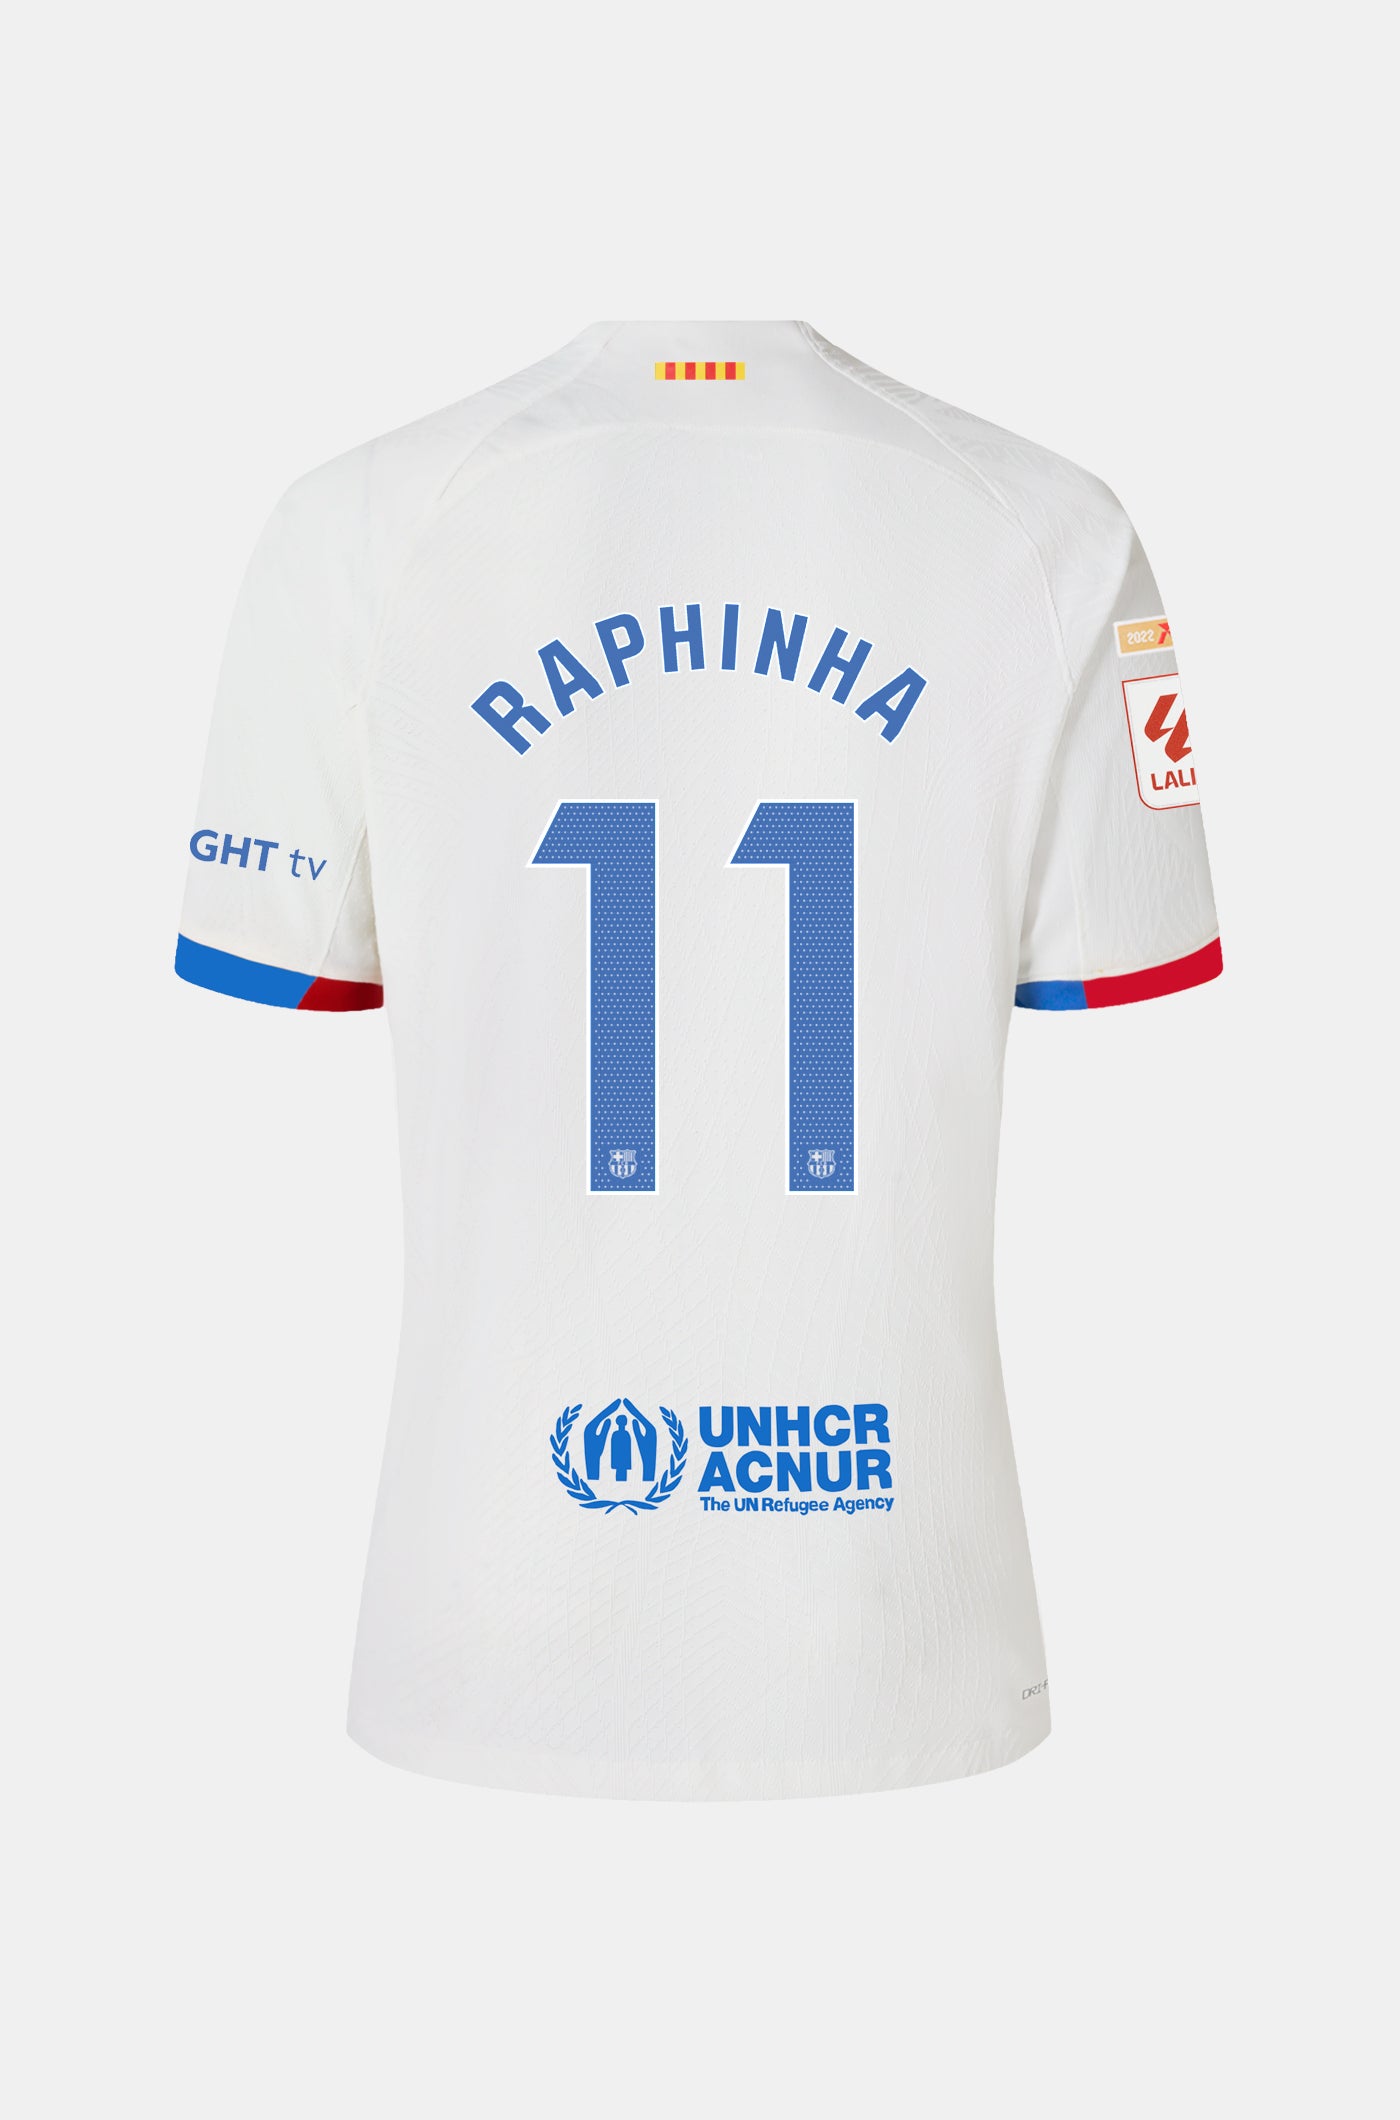 LFP FC Barcelona away shirt 23/24 Player’s Edition  - RAPHINHA